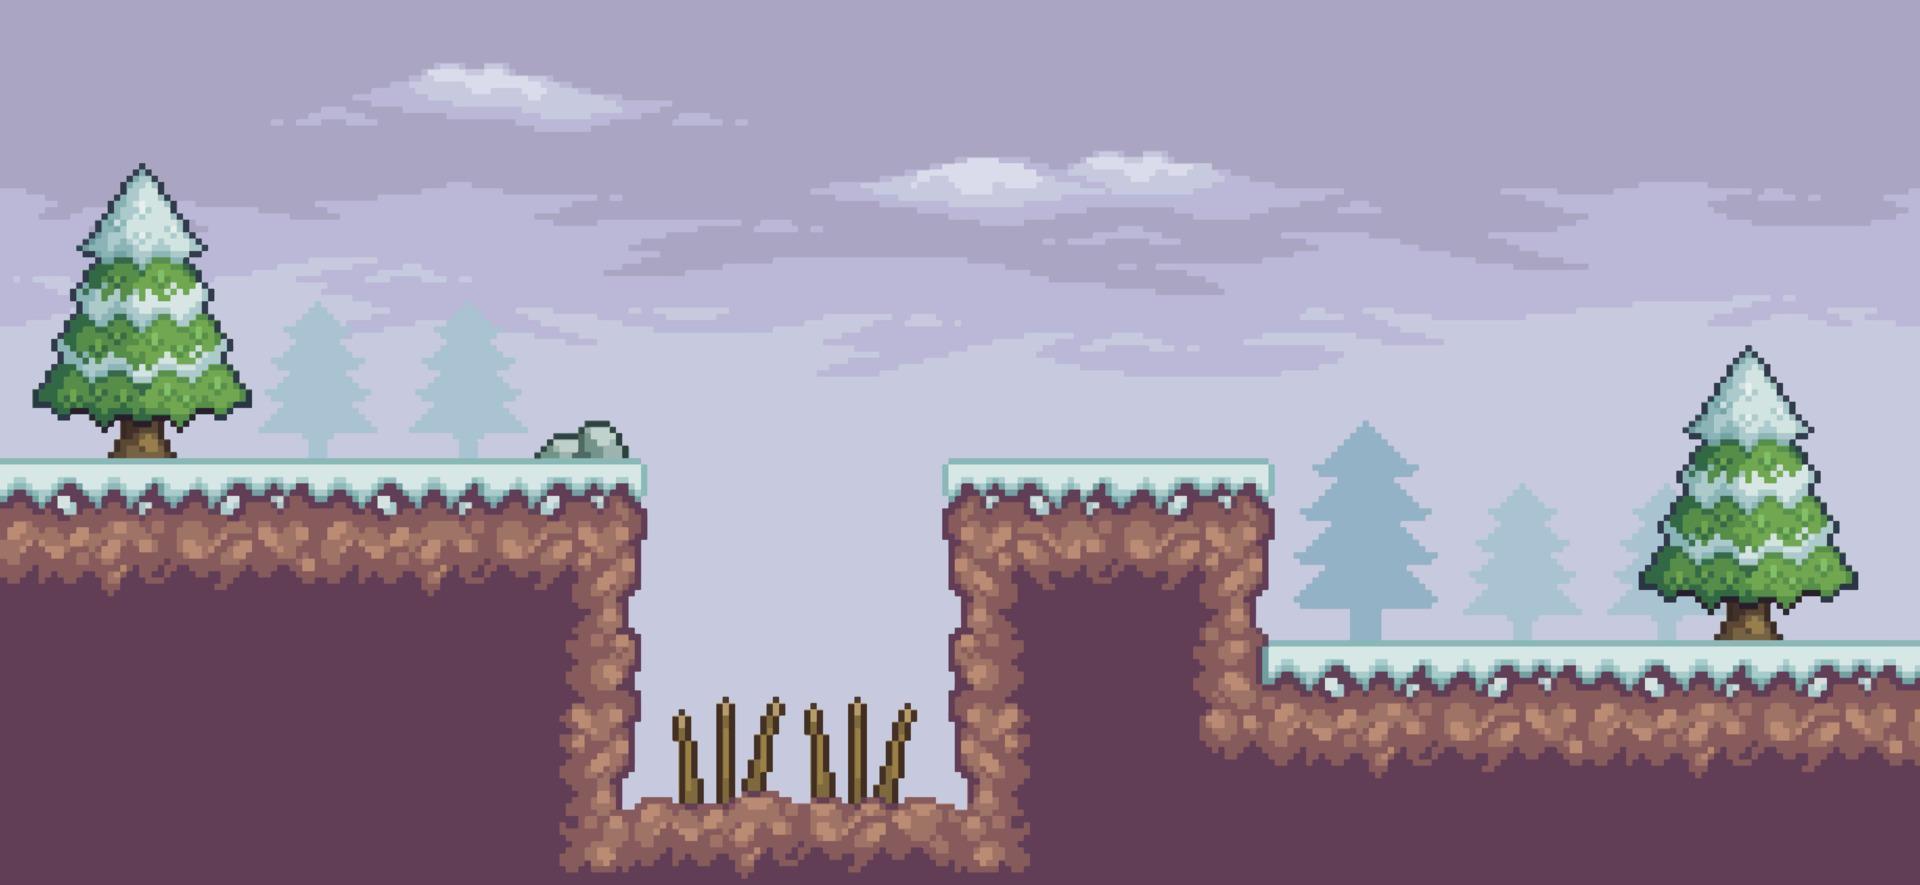 pixelart-spelscène in sneeuw met pijnbomen, val en wolken 8-bits achtergrond vector